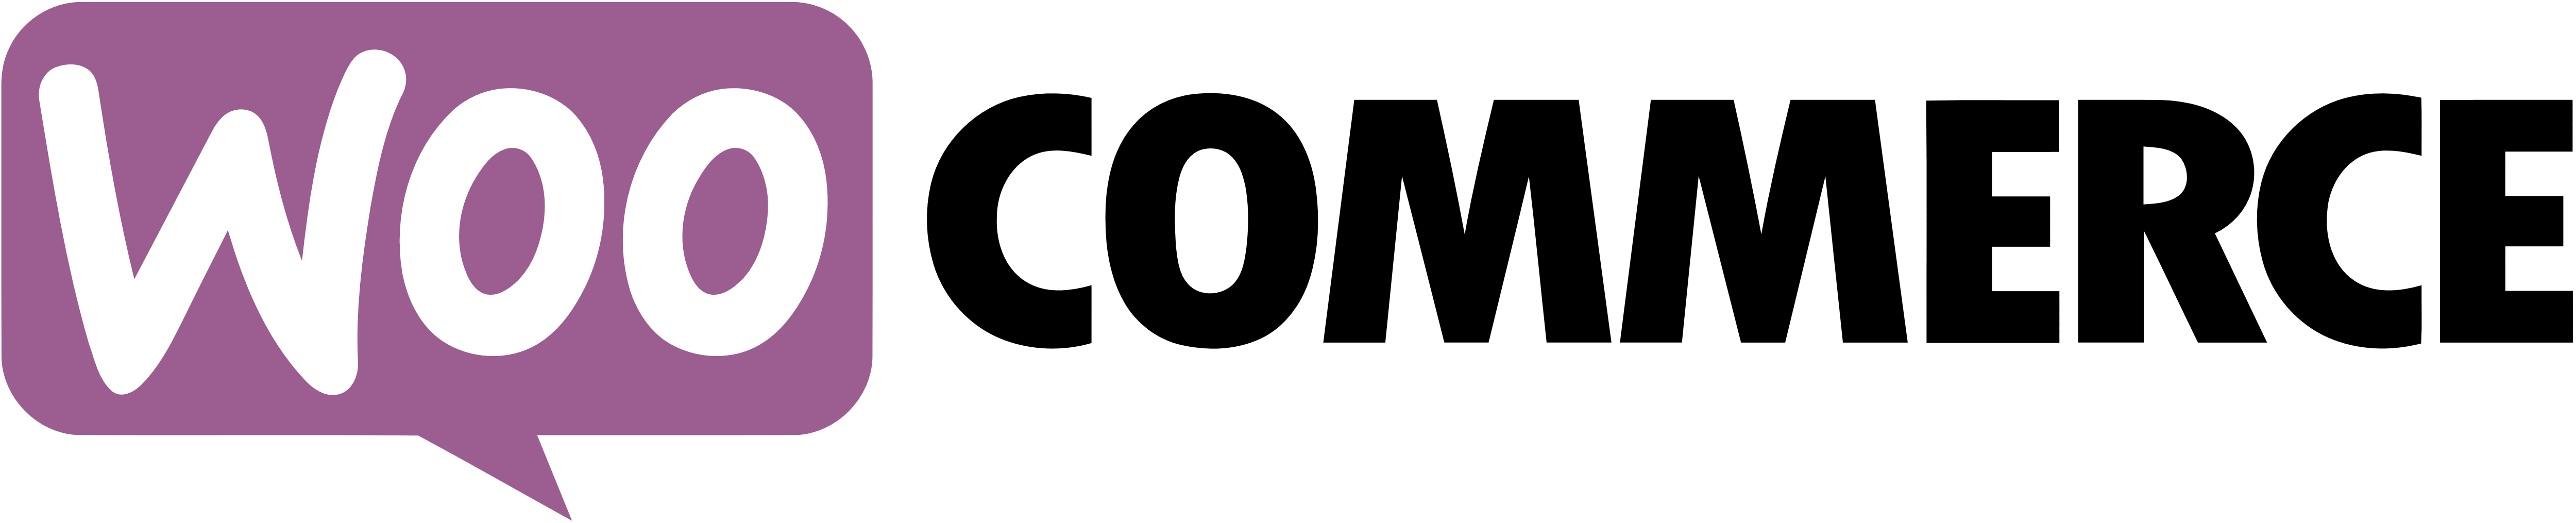 Pretium aliquet